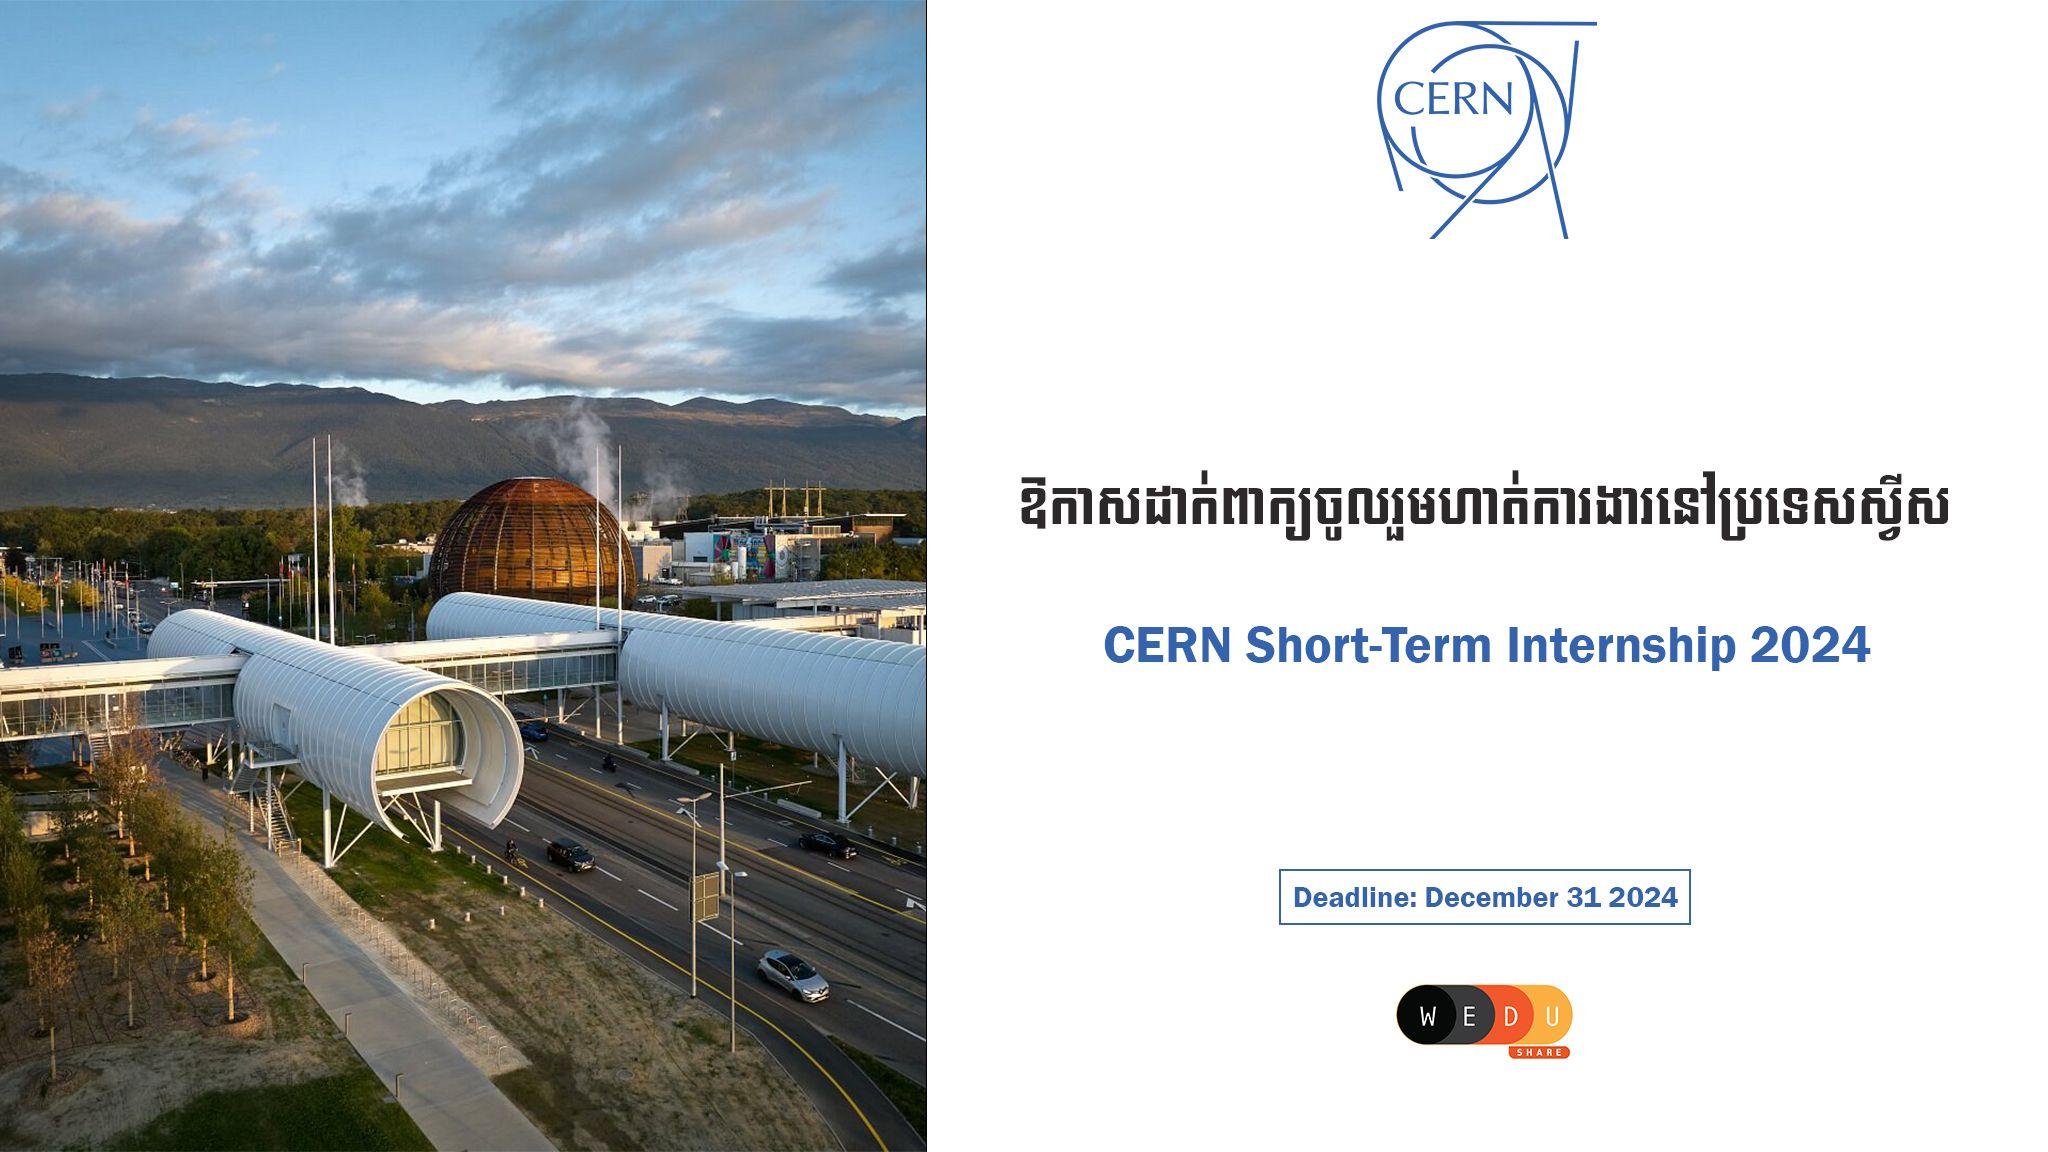 CERN Short-Term Internship 2024